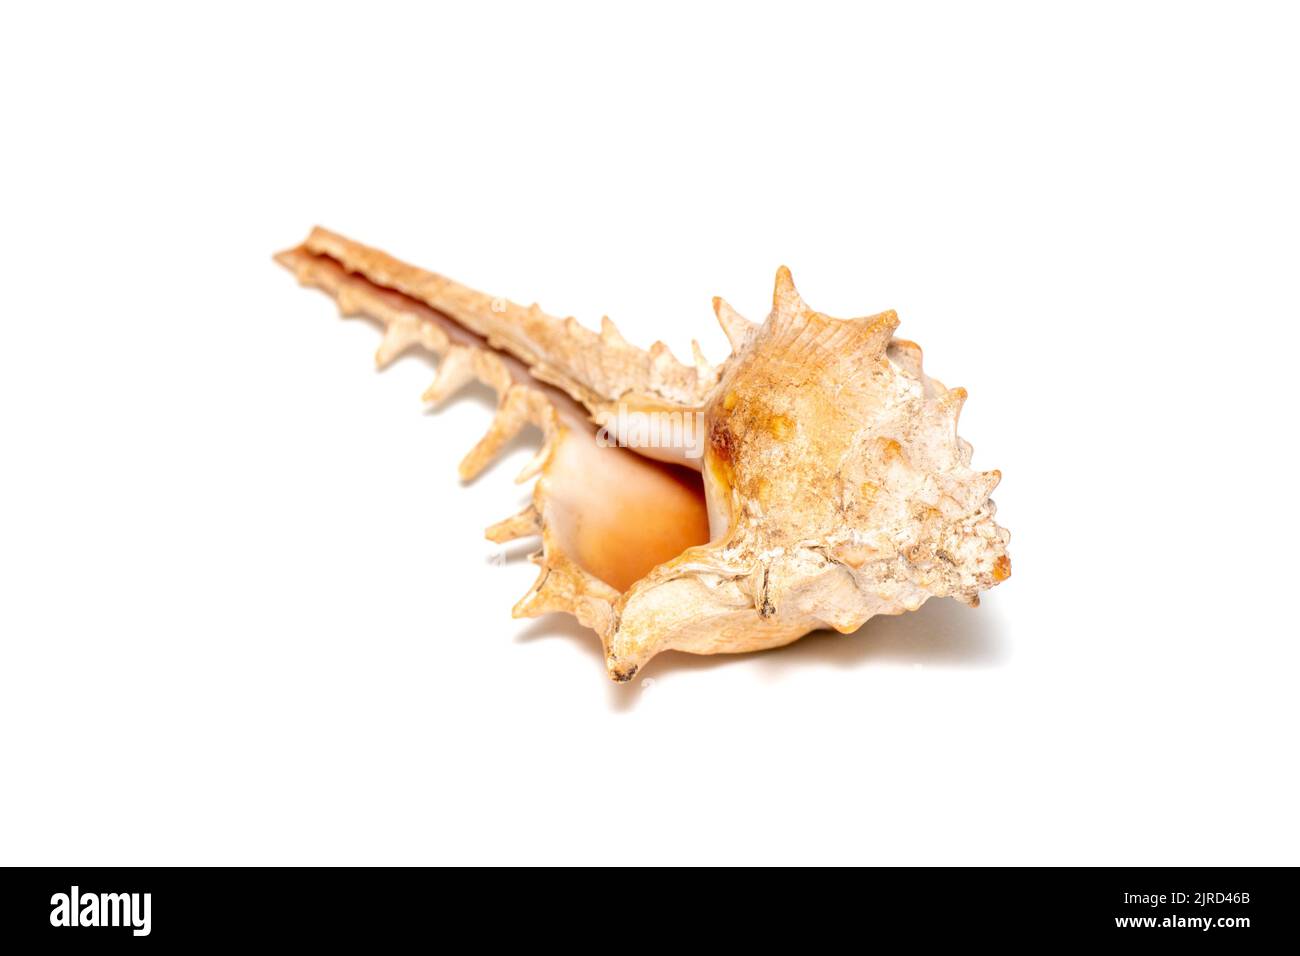 Image de la coquille de conch thorn sur fond blanc. Animaux sous-marins. Coquillages. Banque D'Images